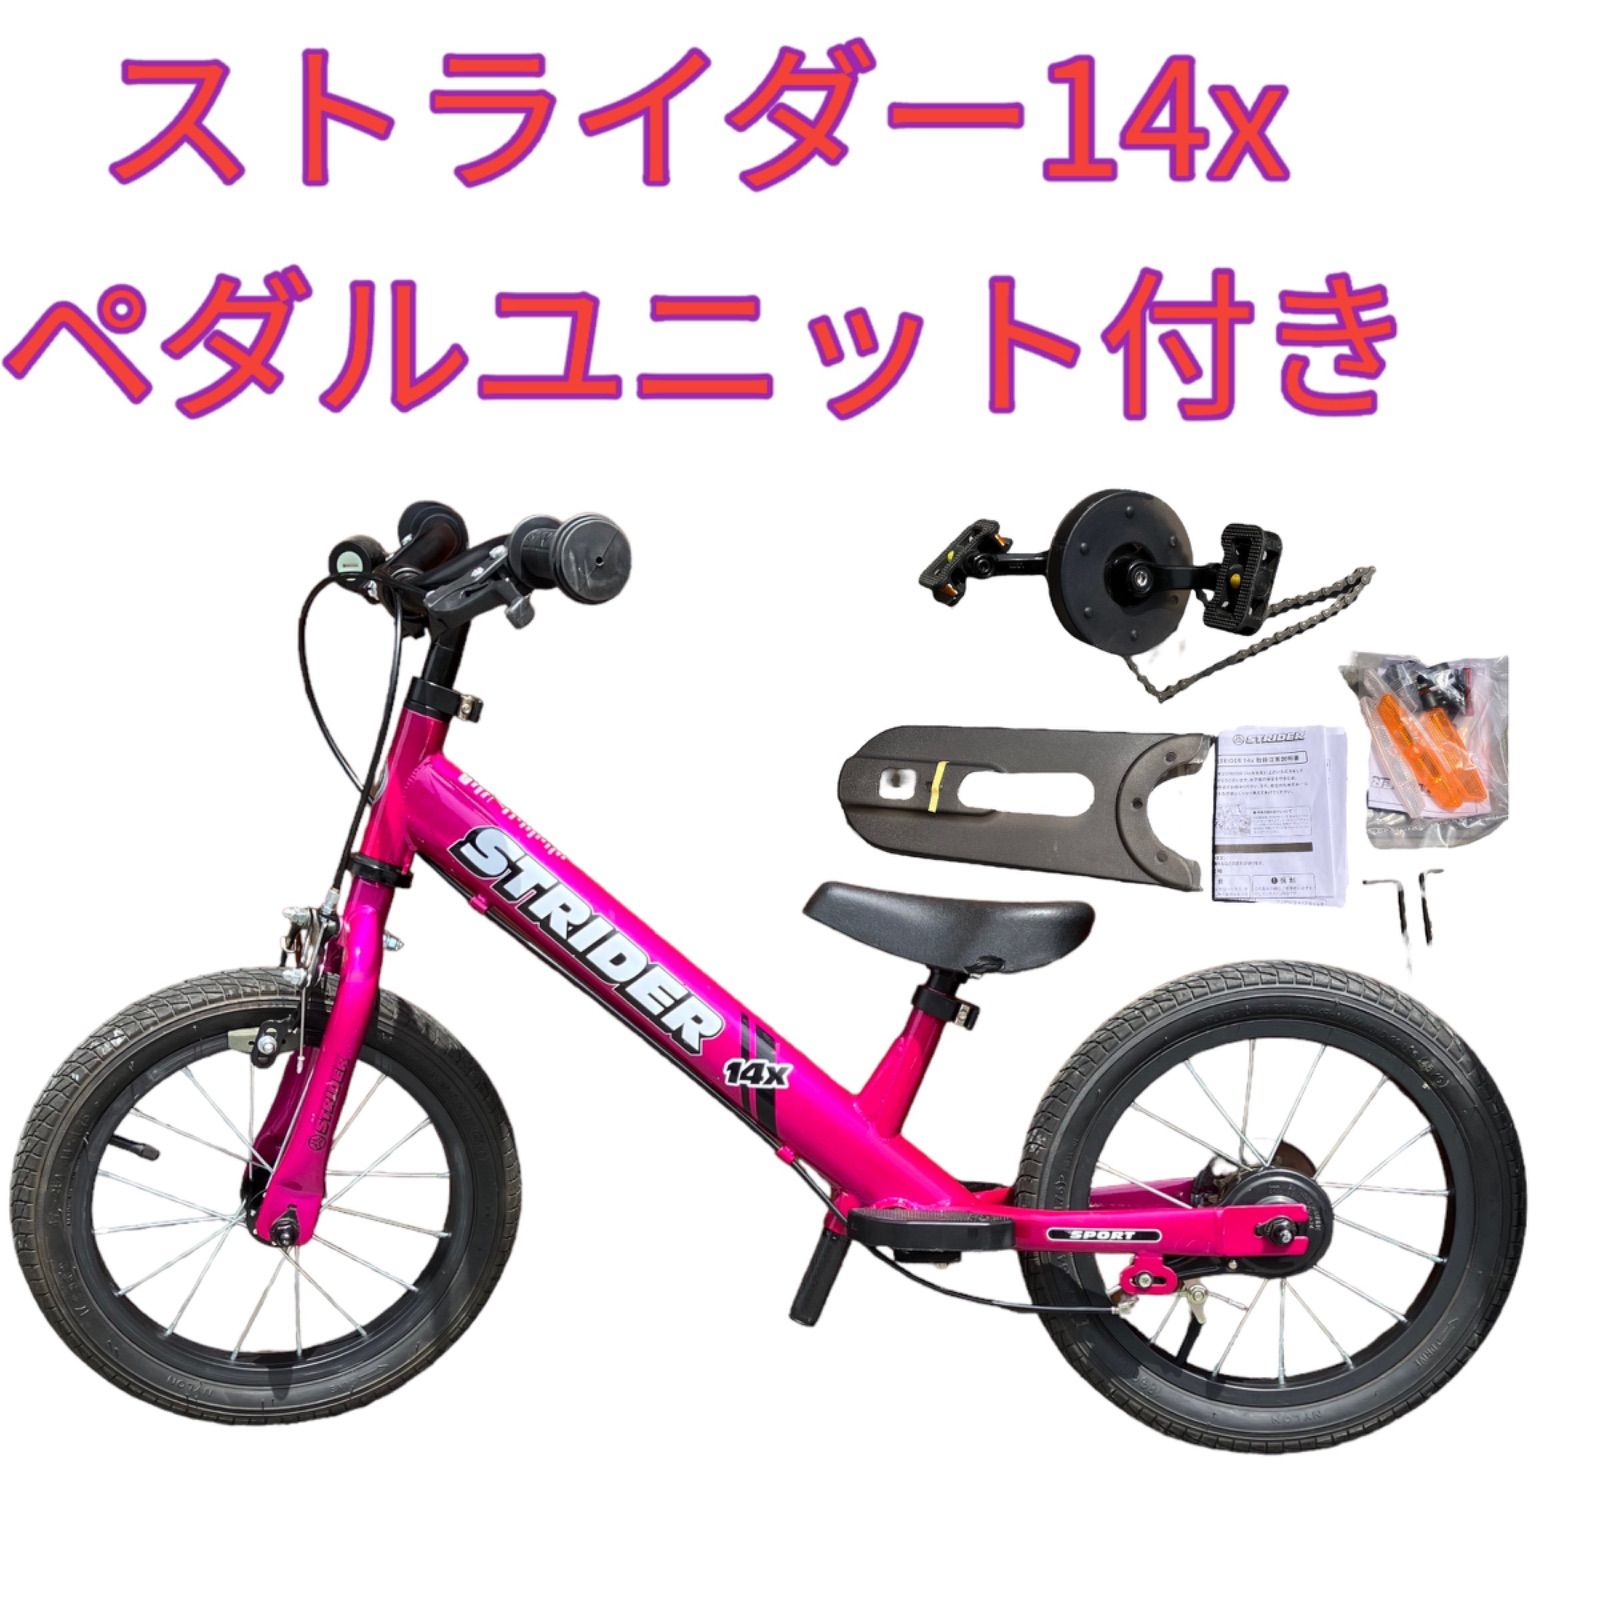 【良品】STRIDER 14X ピンク ペダルユニット・スタンド装着済0217-23000